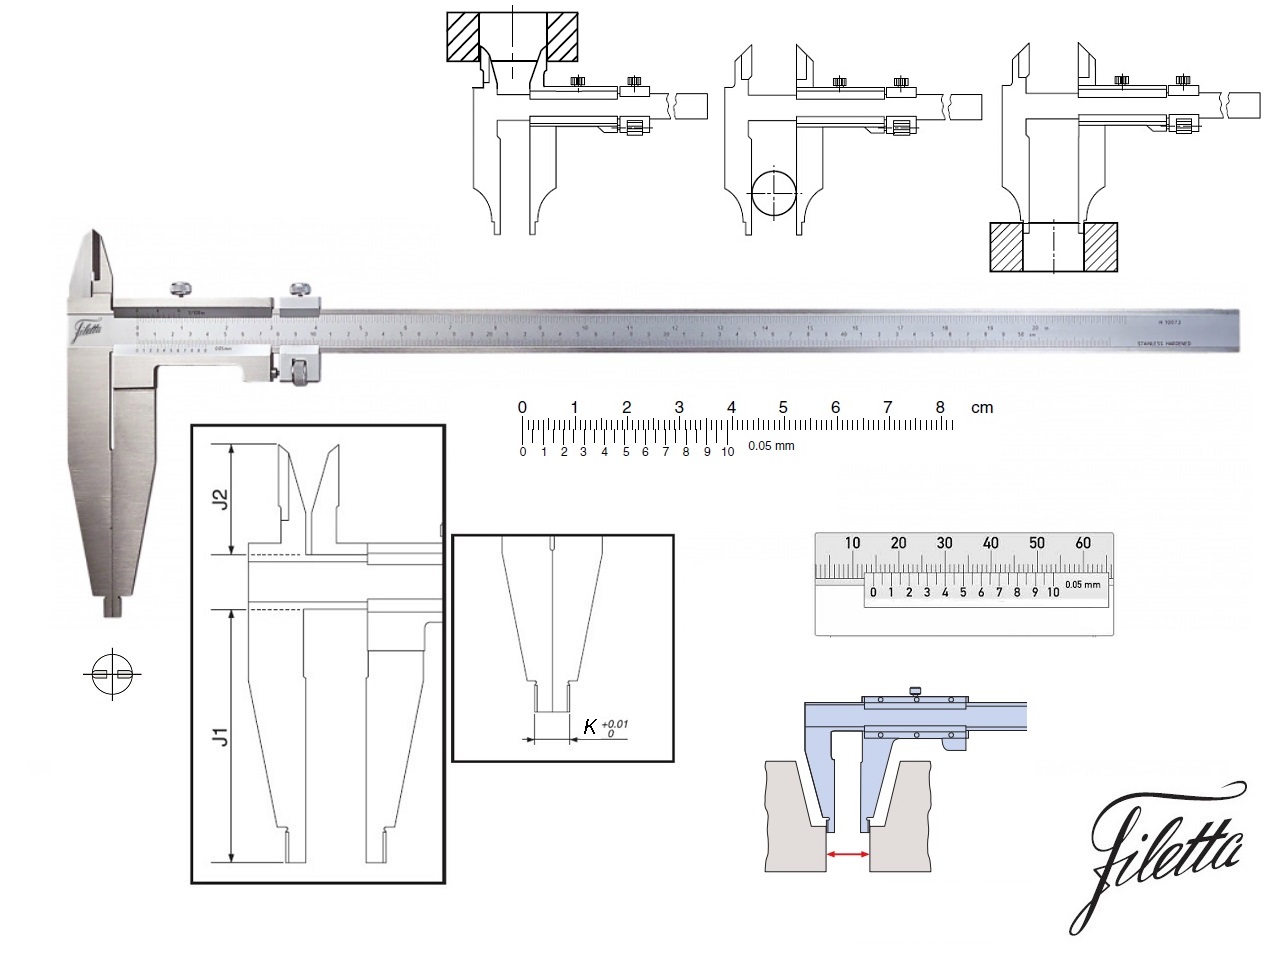 Posuvné měřítko Filetta 0-300 mm, čelisti 90 mm, s měřicími nožíky pro vnitřní měření